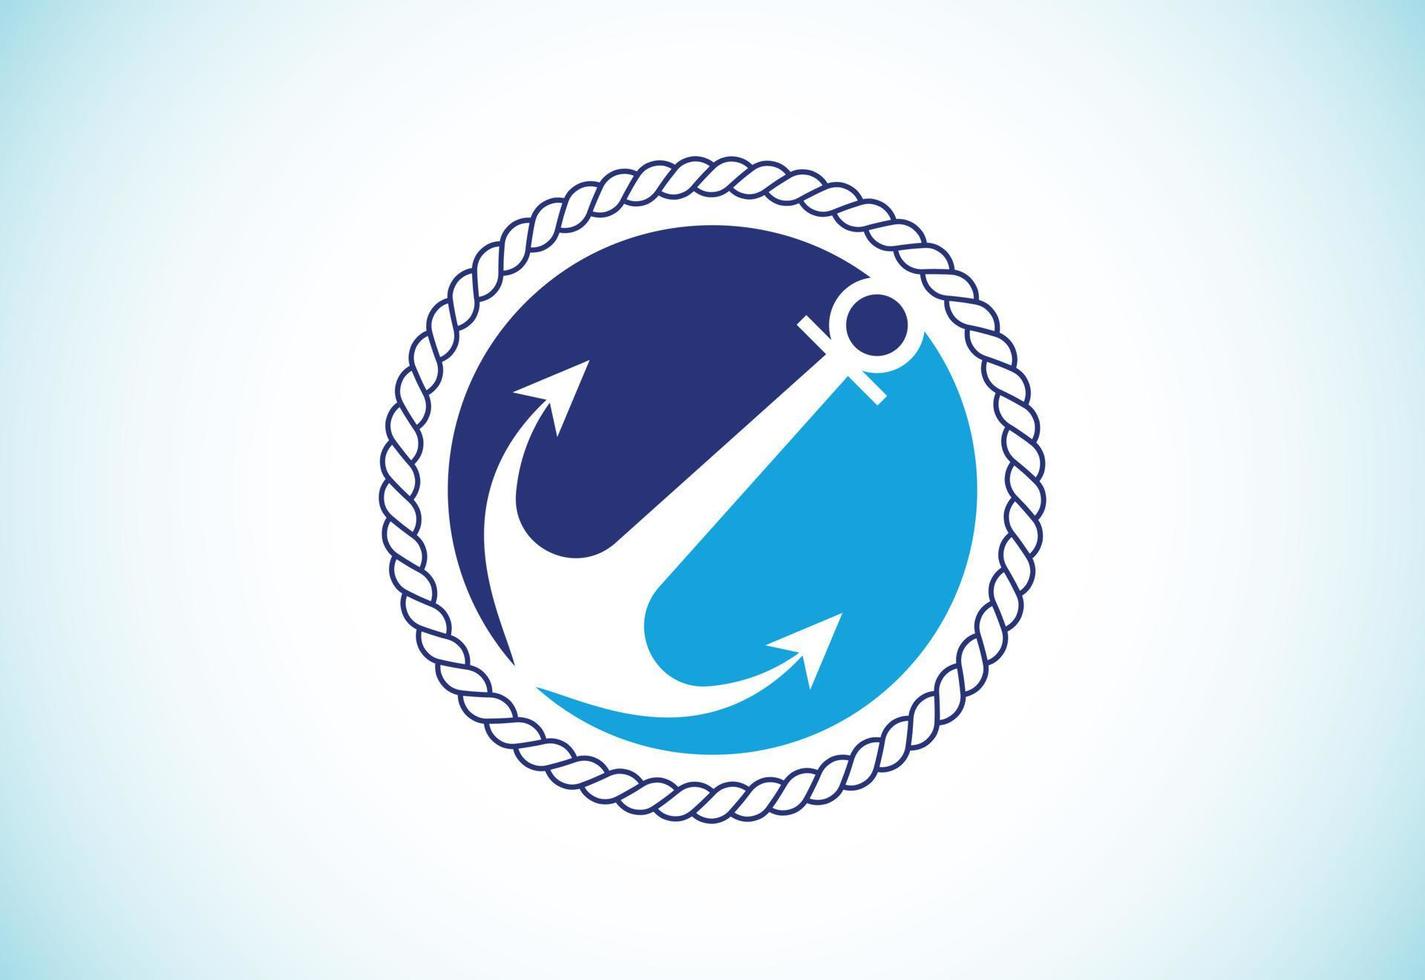 Cruise logo design vector, anchor brand logo design template vector